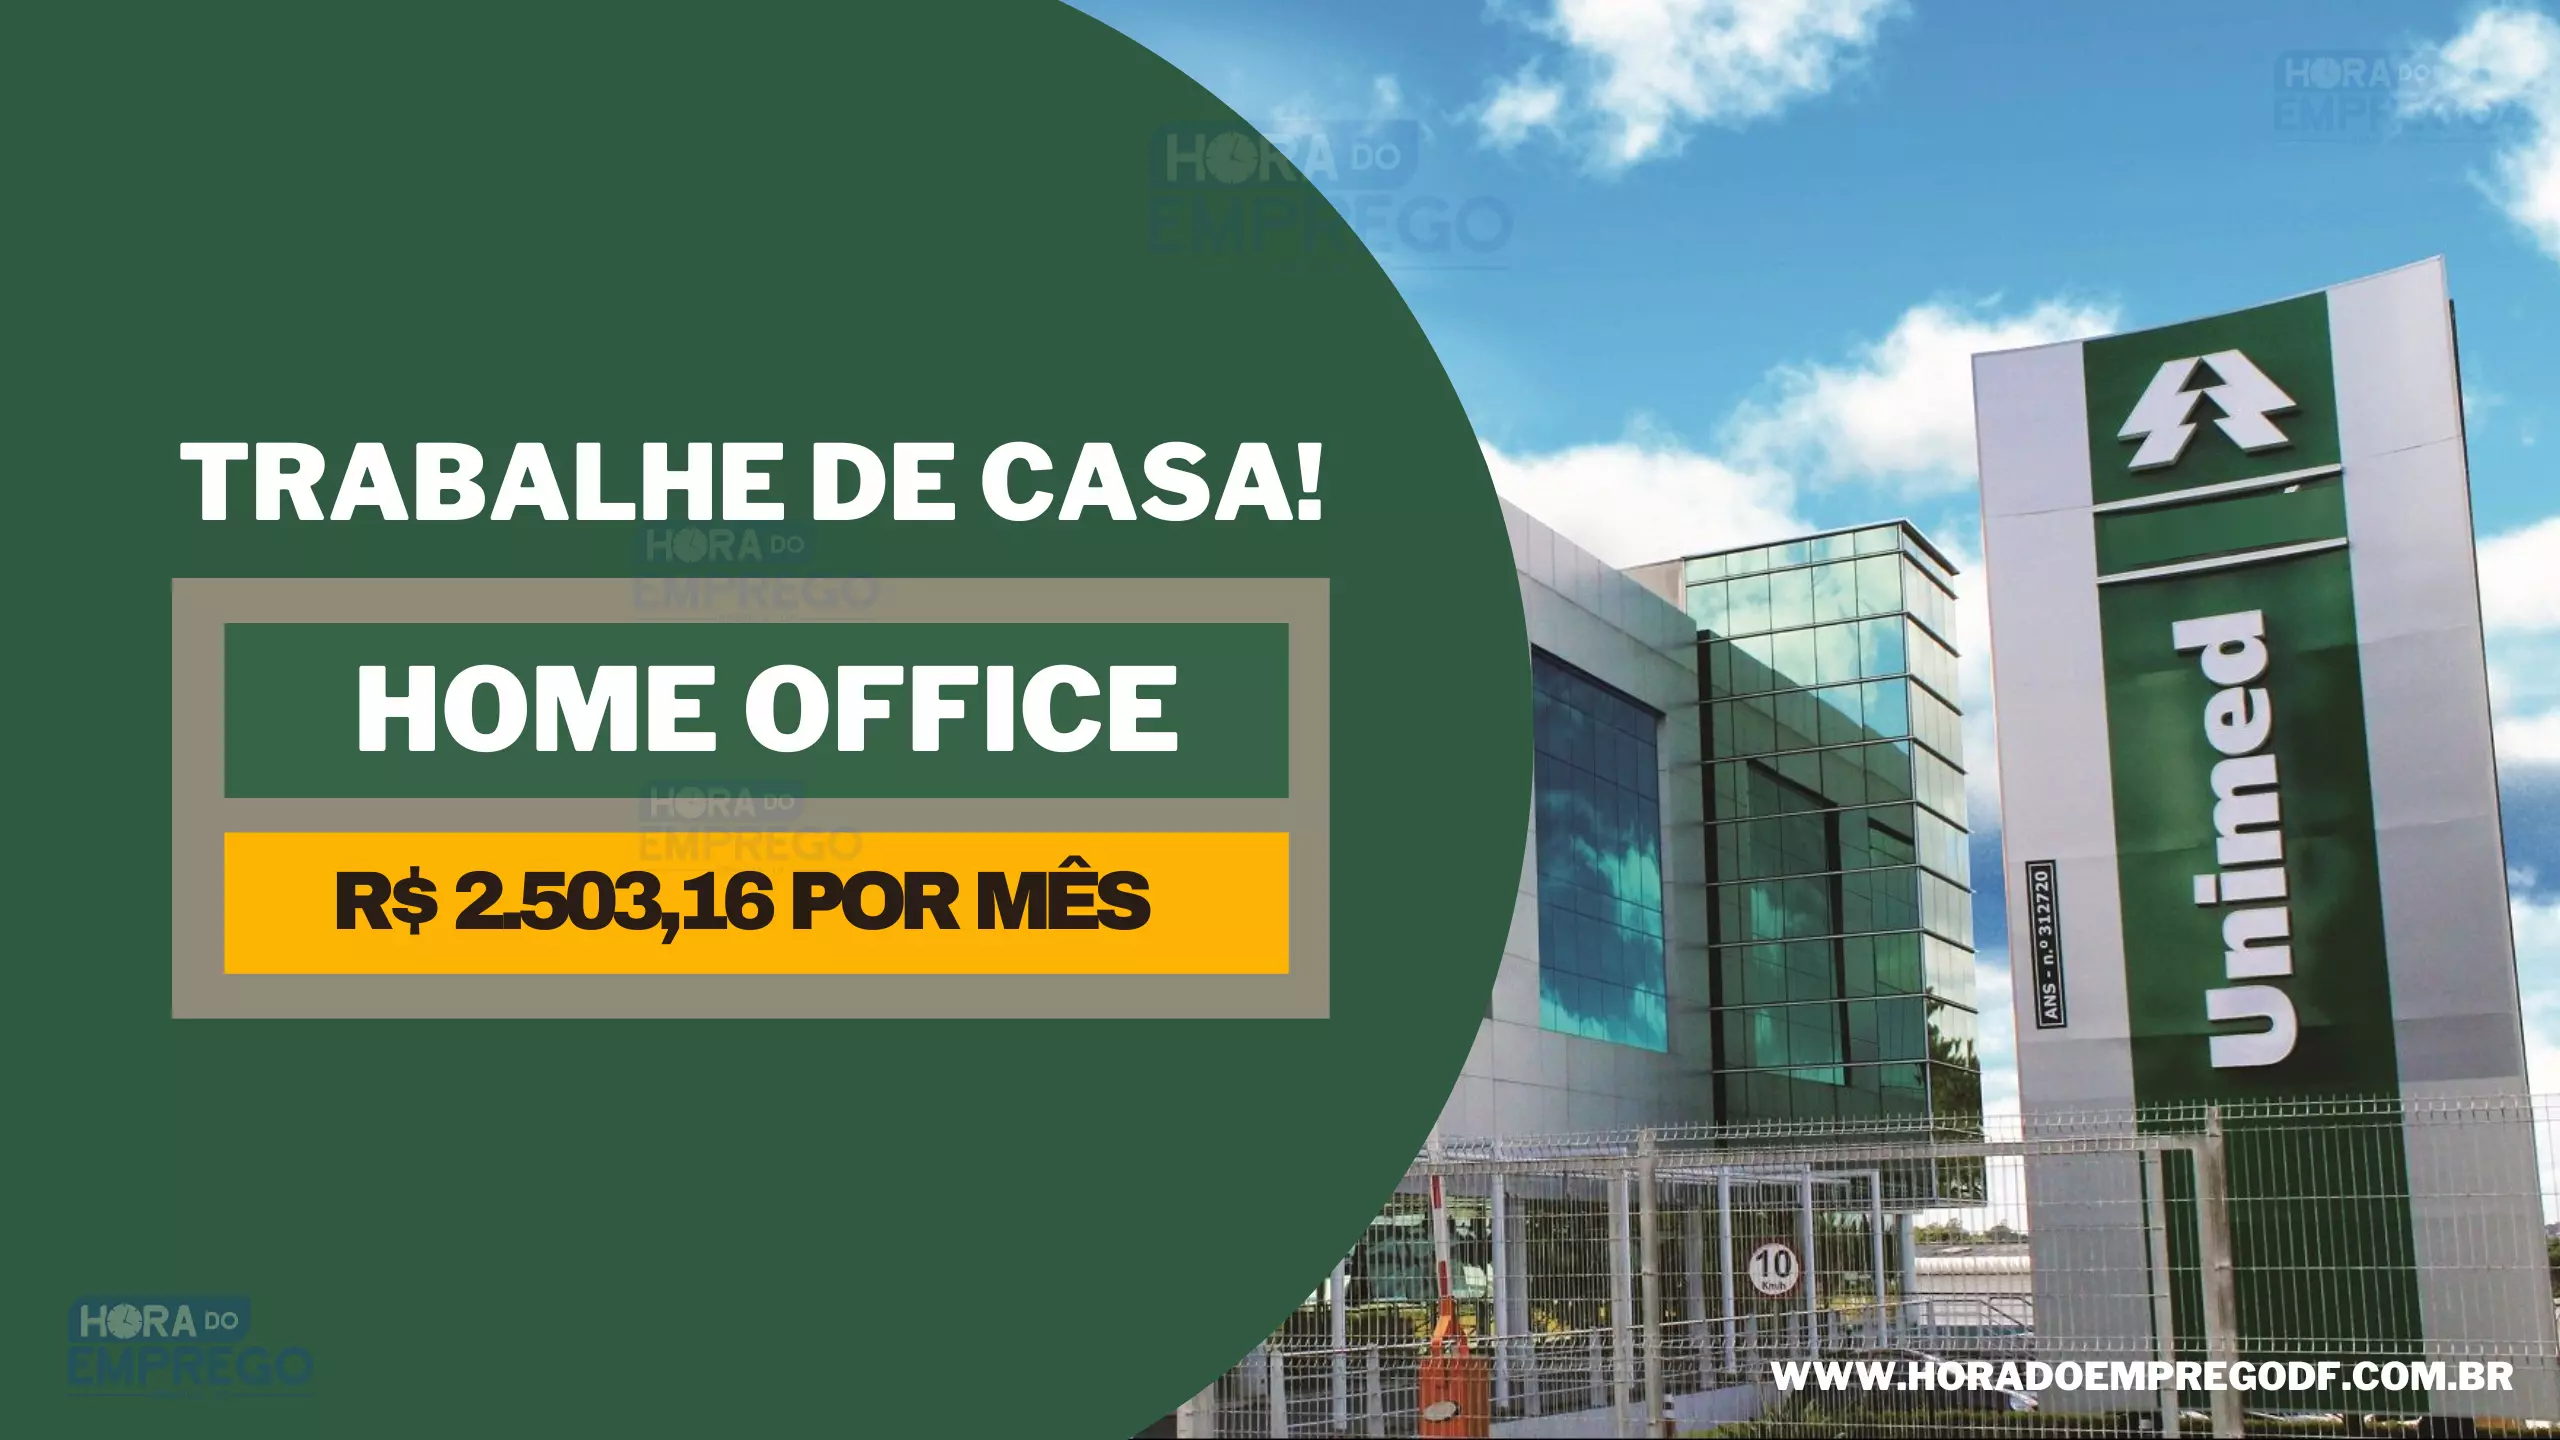 Trabalhe de casa: Unimed abriu vaga HOME OFFICE para Assistente de Gestão com salário de R$ 2.503,16 e Alimentação de R$ 800,00